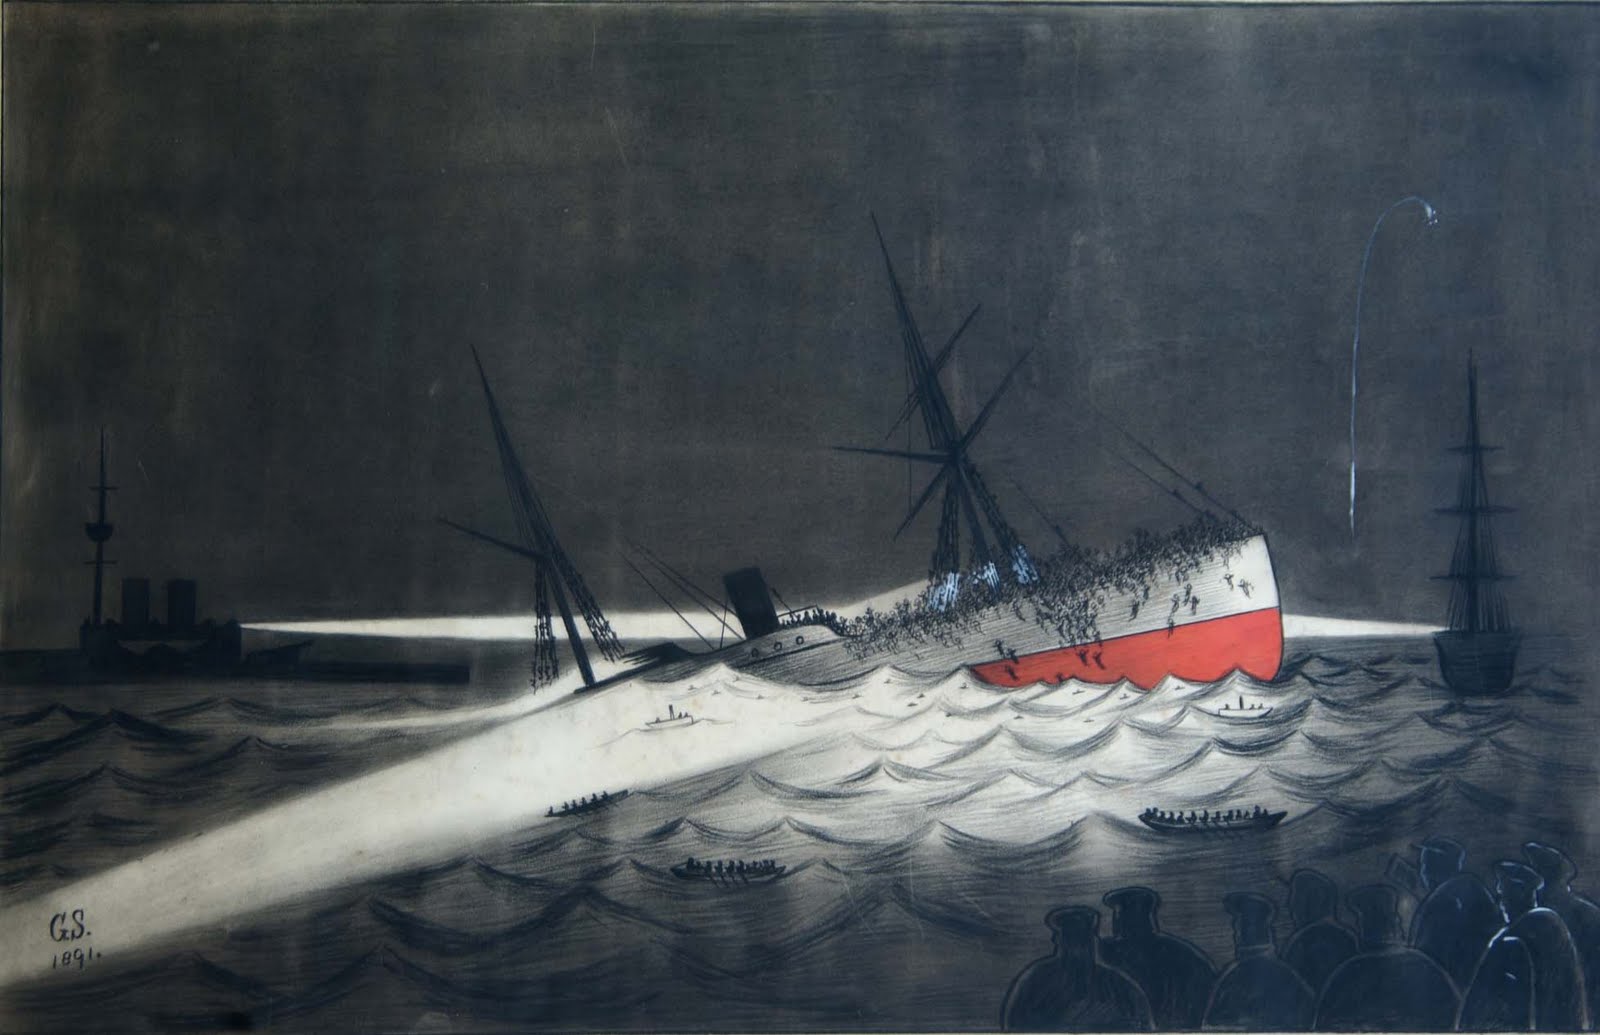 1891: Horrific Passenger Ship Accident near Gibraltar